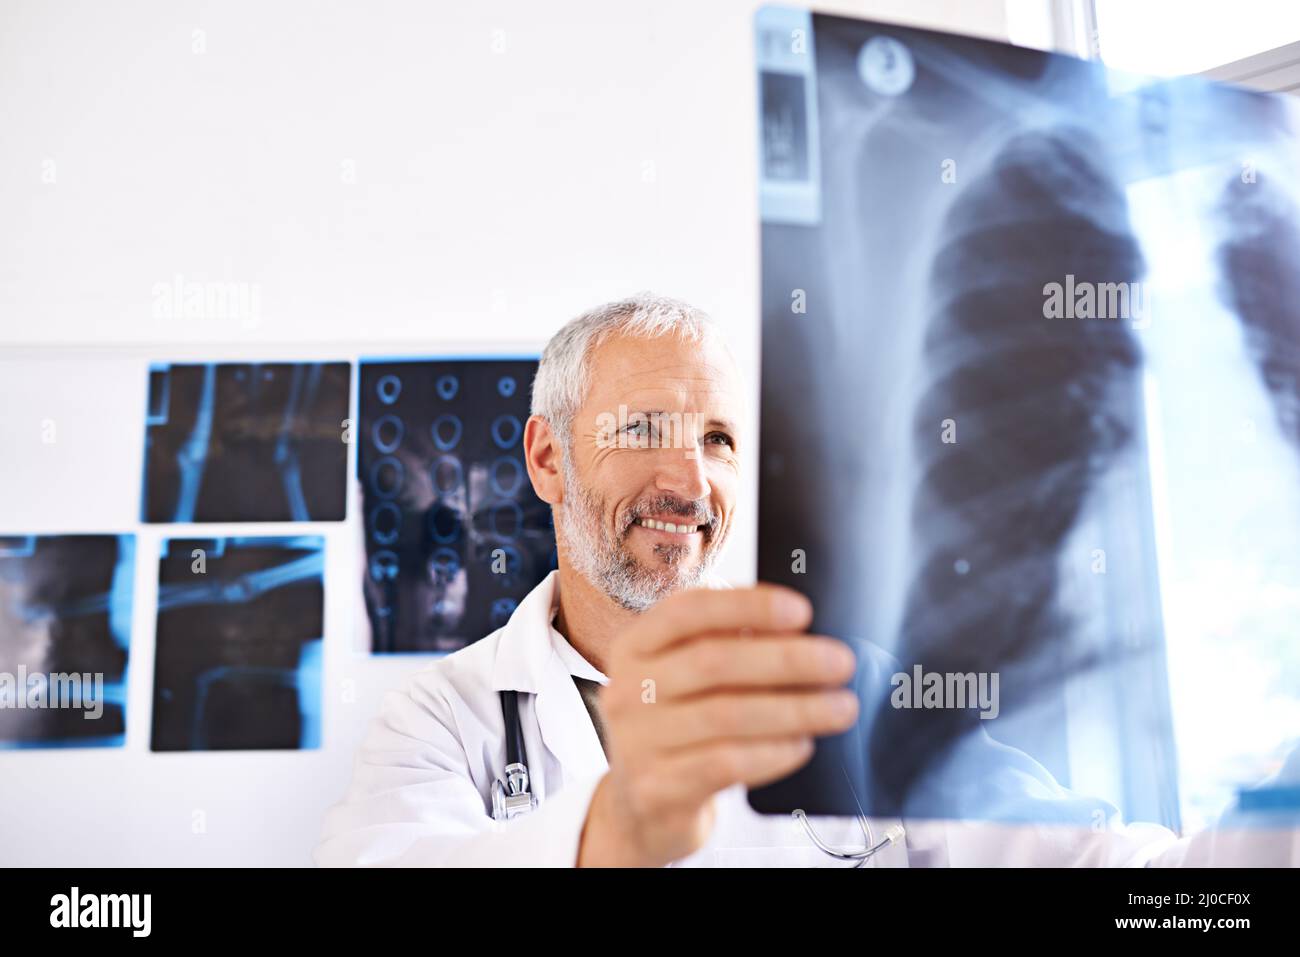 Tutto sembra essere in ordine qui. Scatto di un medico maschio maturo sorridente mentre si guarda un'immagine radiografica in un ospedale. Foto Stock